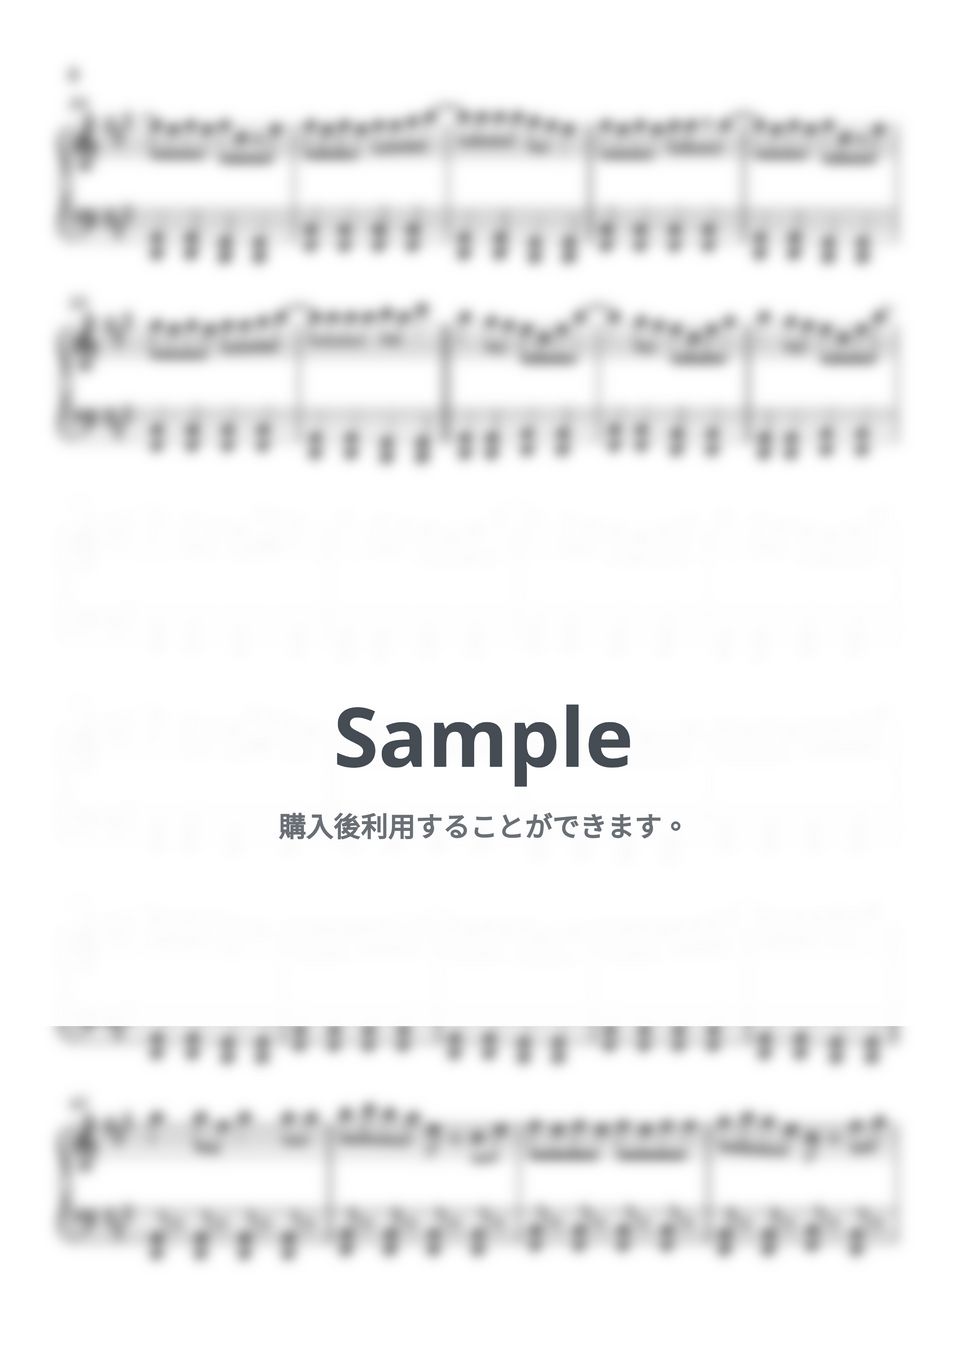 ユリイ・カノン - おどりゃんせ (ピアノ楽譜 / 初級) by Piano Lovers. jp